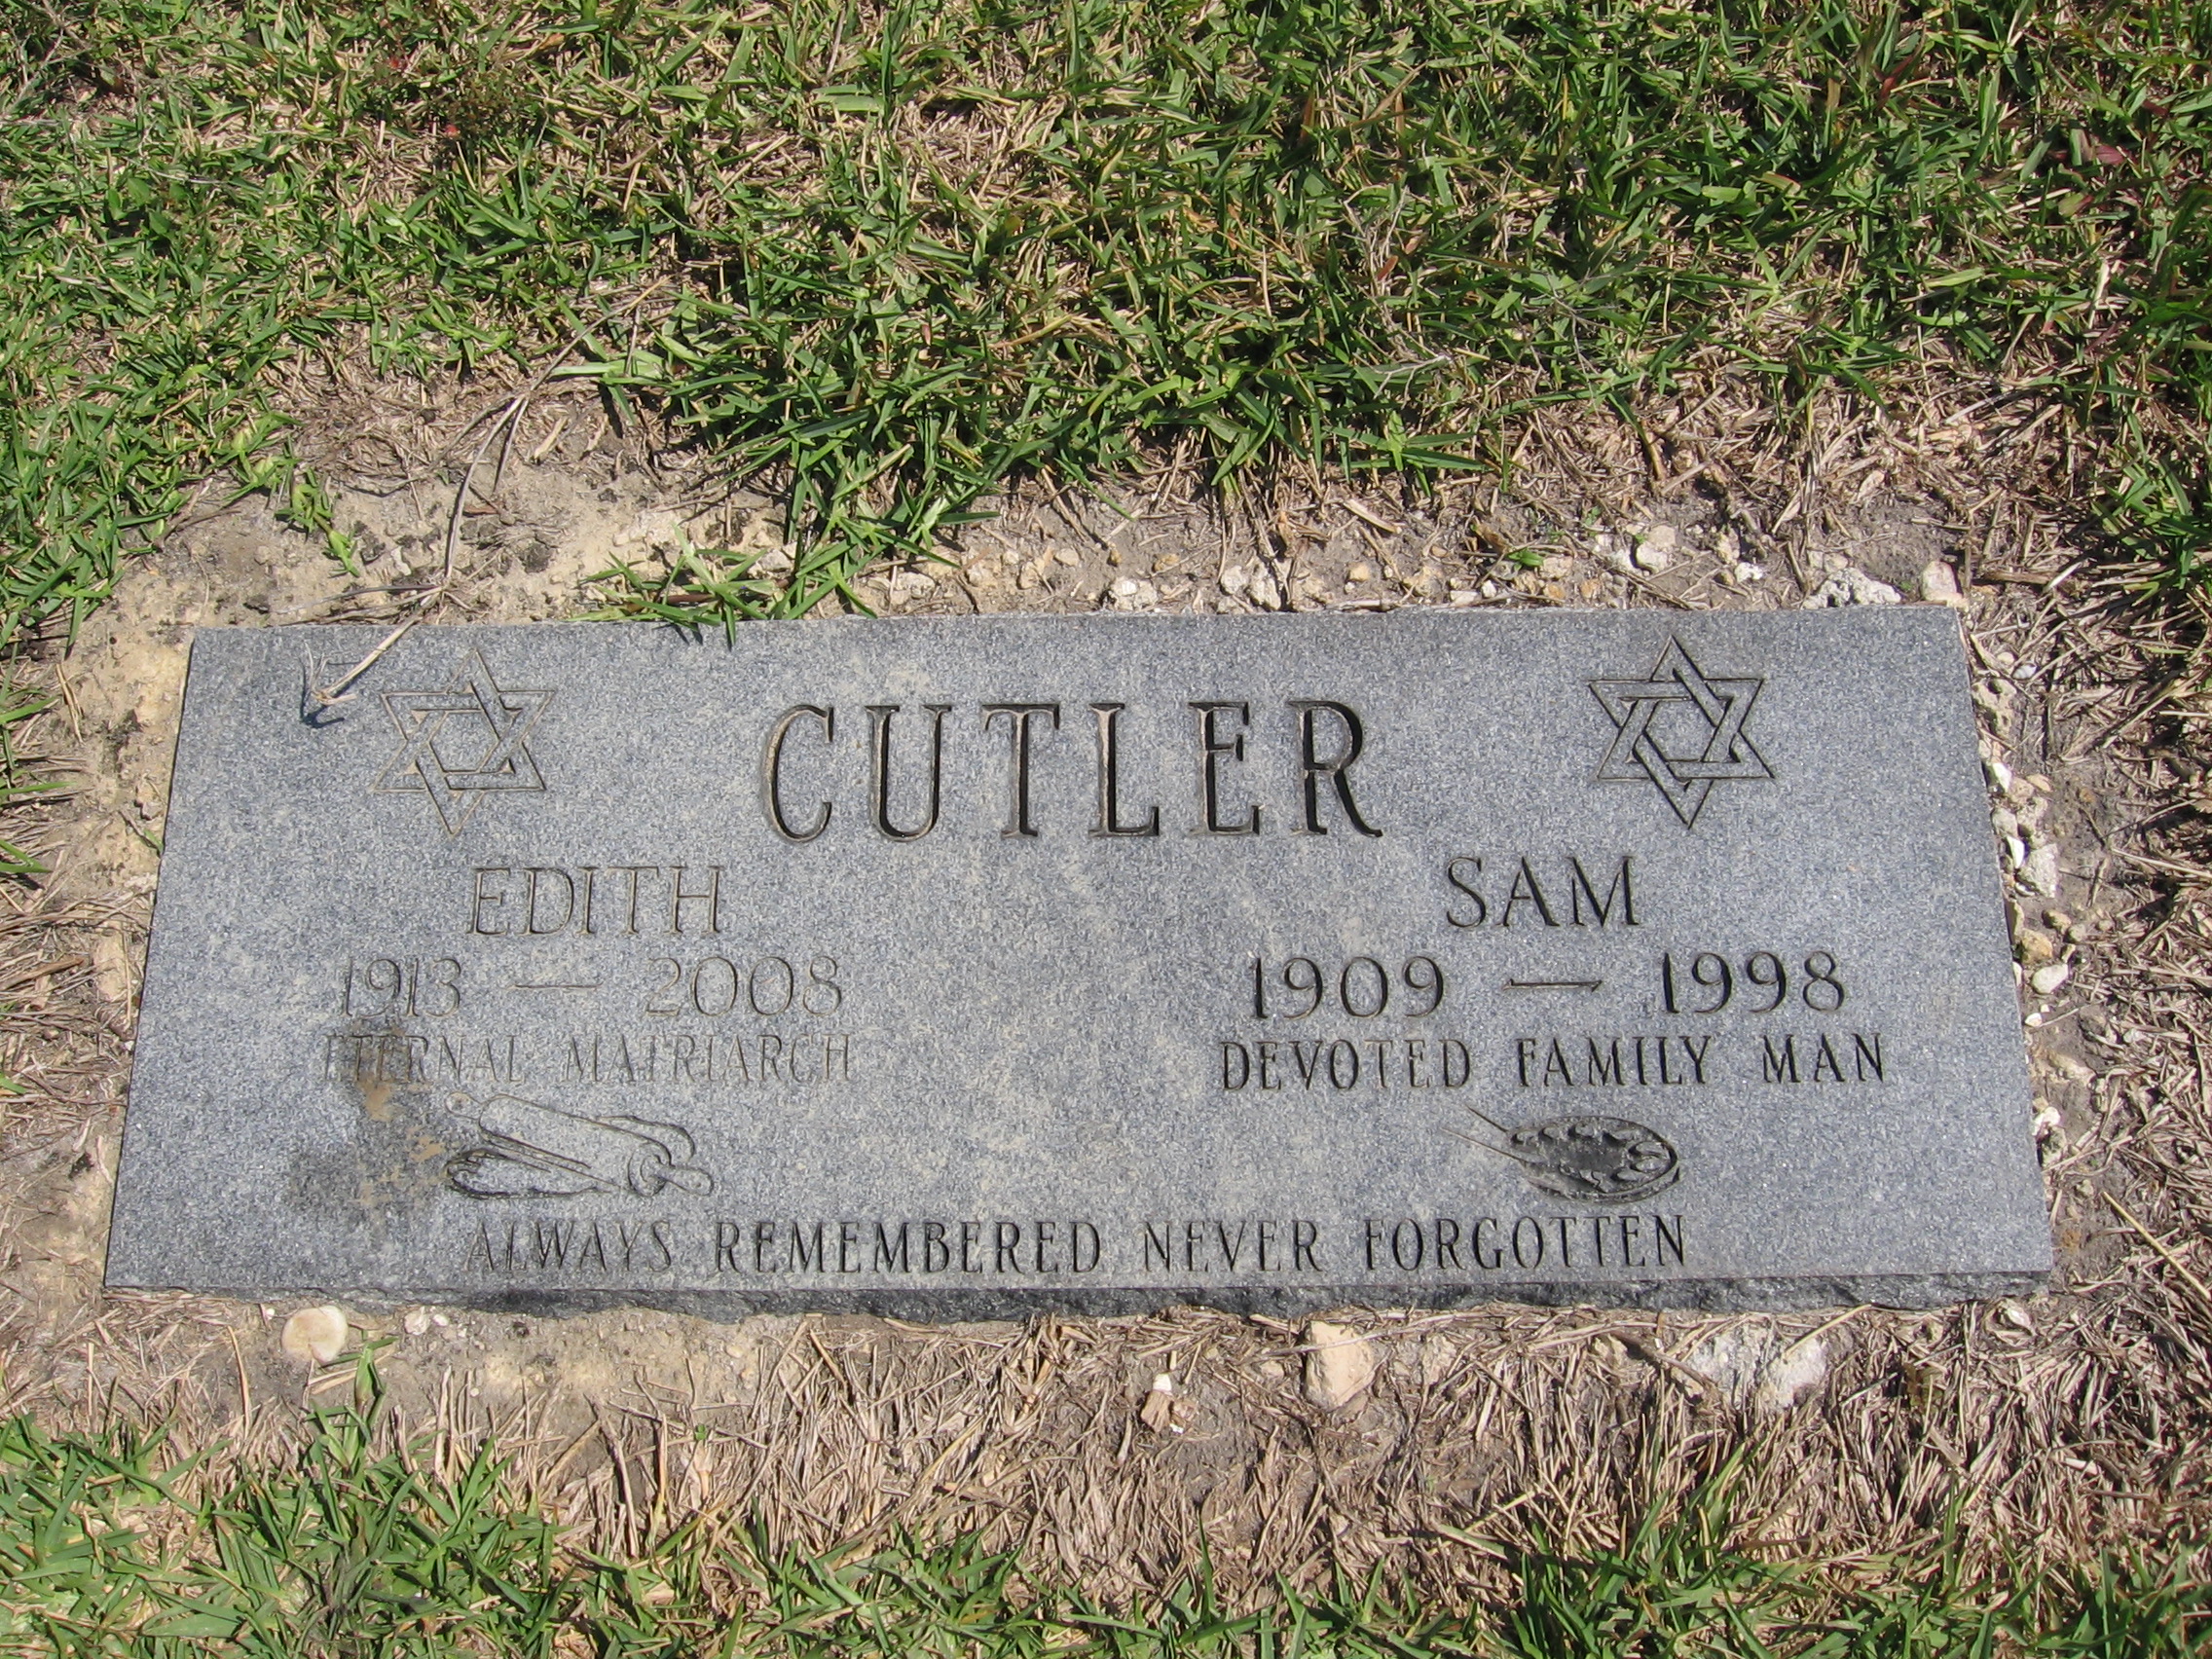 Sam Cutler